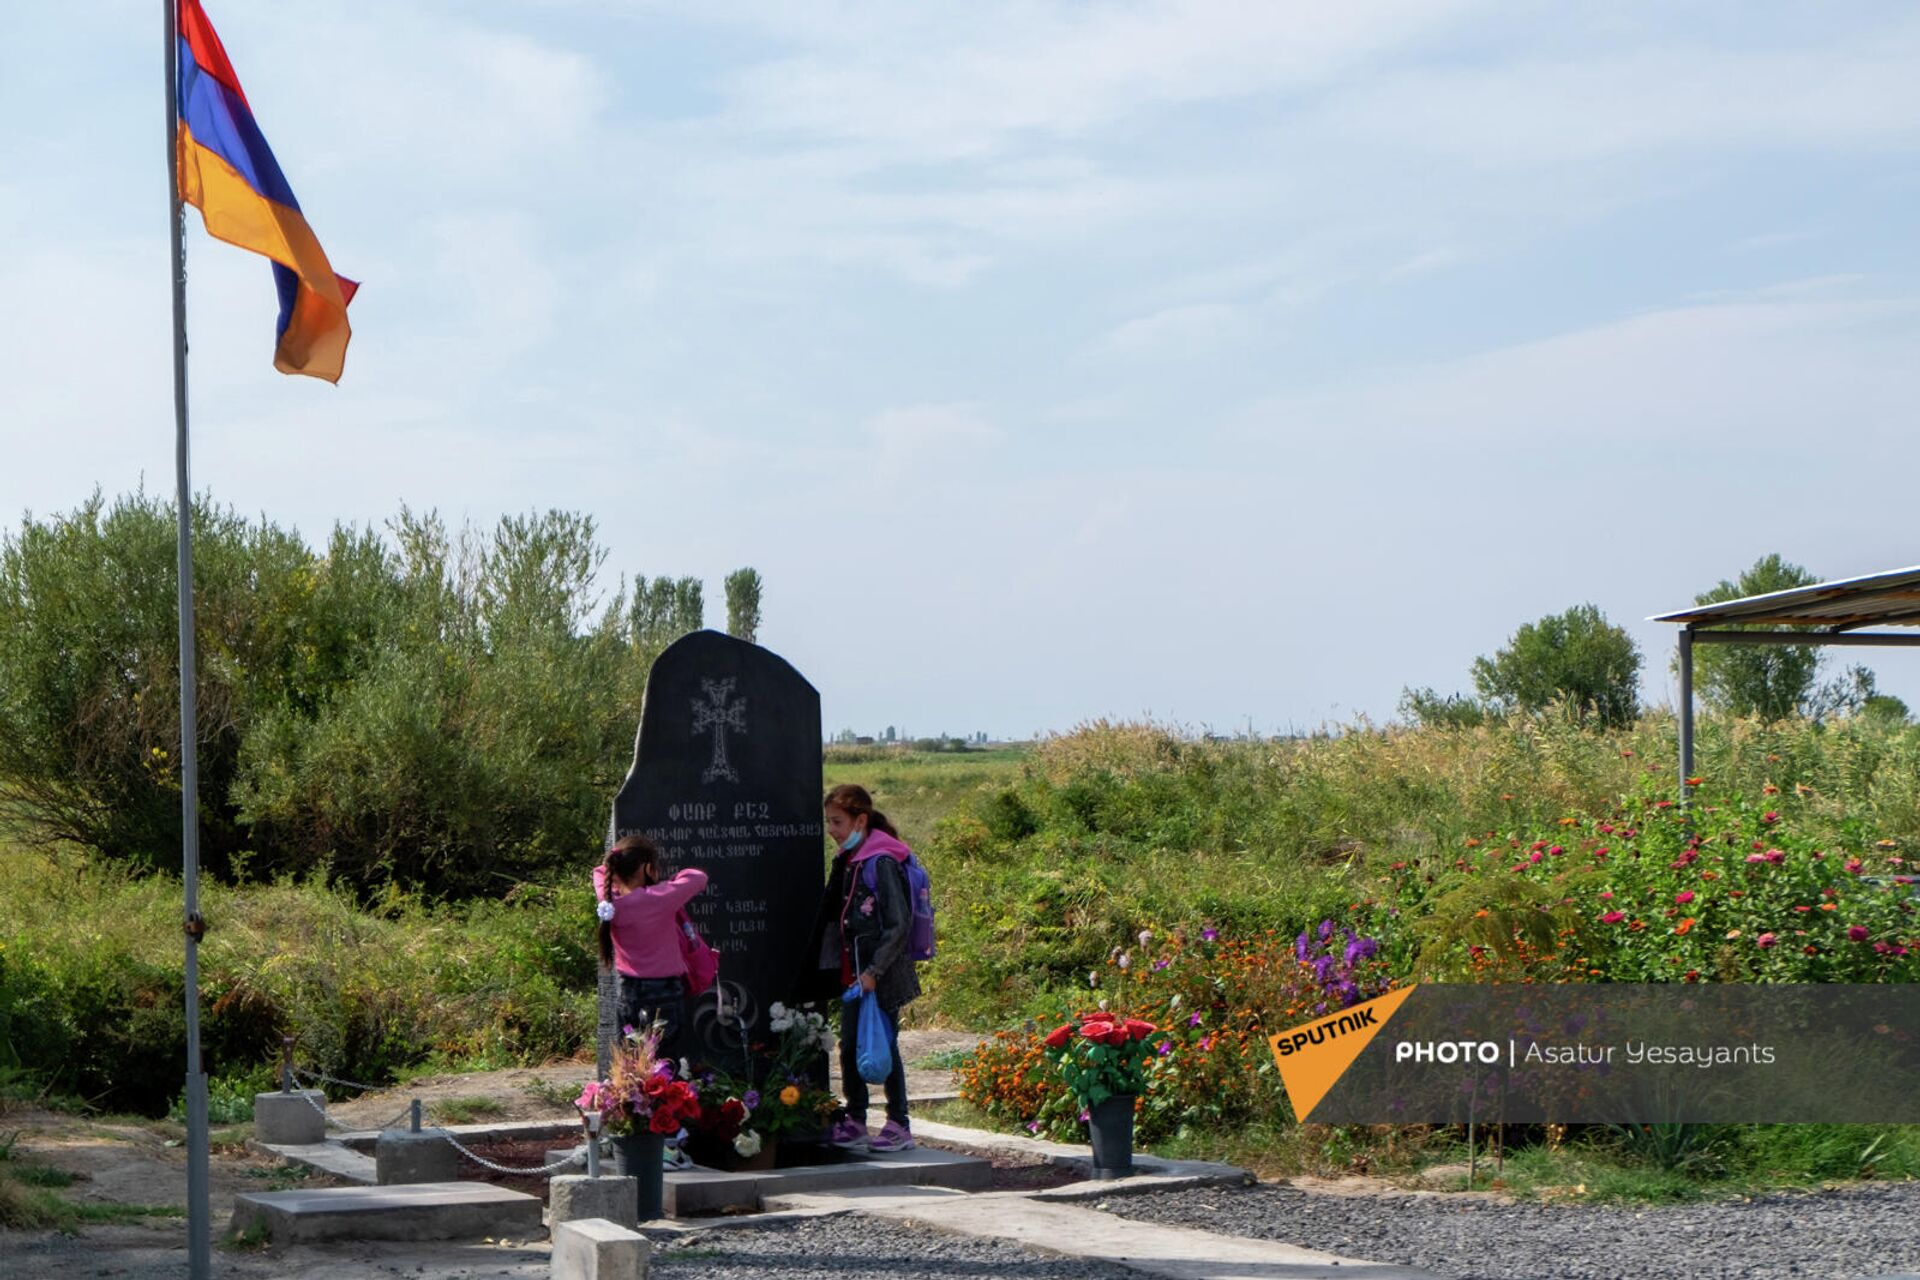 44-օրյա պատերազմում զոհվածների հիշատակին նվիրված հուշակոթող Սիփանիկ գյուղում - Sputnik Արմենիա, 1920, 01.10.2021